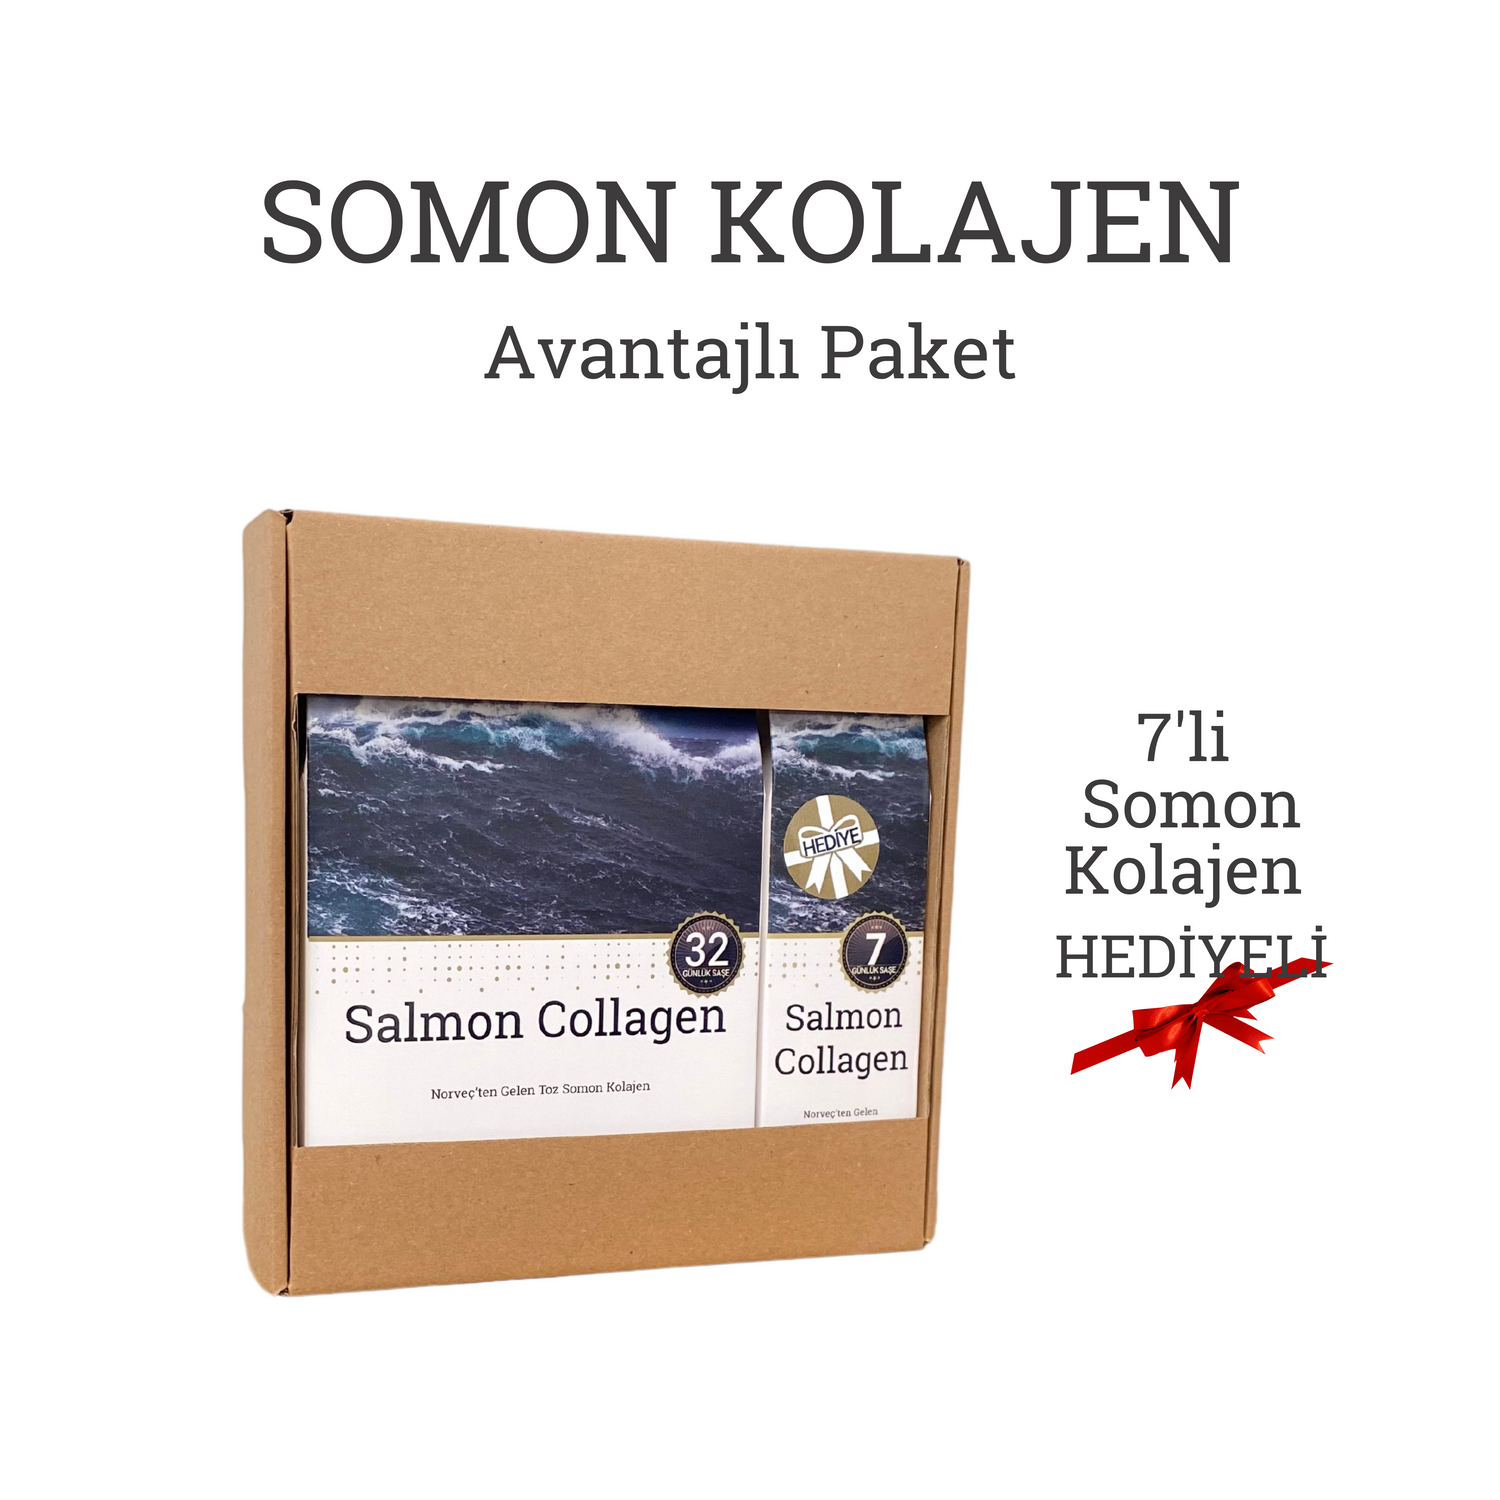 Ballstad Somon Kolajen - Avantajlı Paket